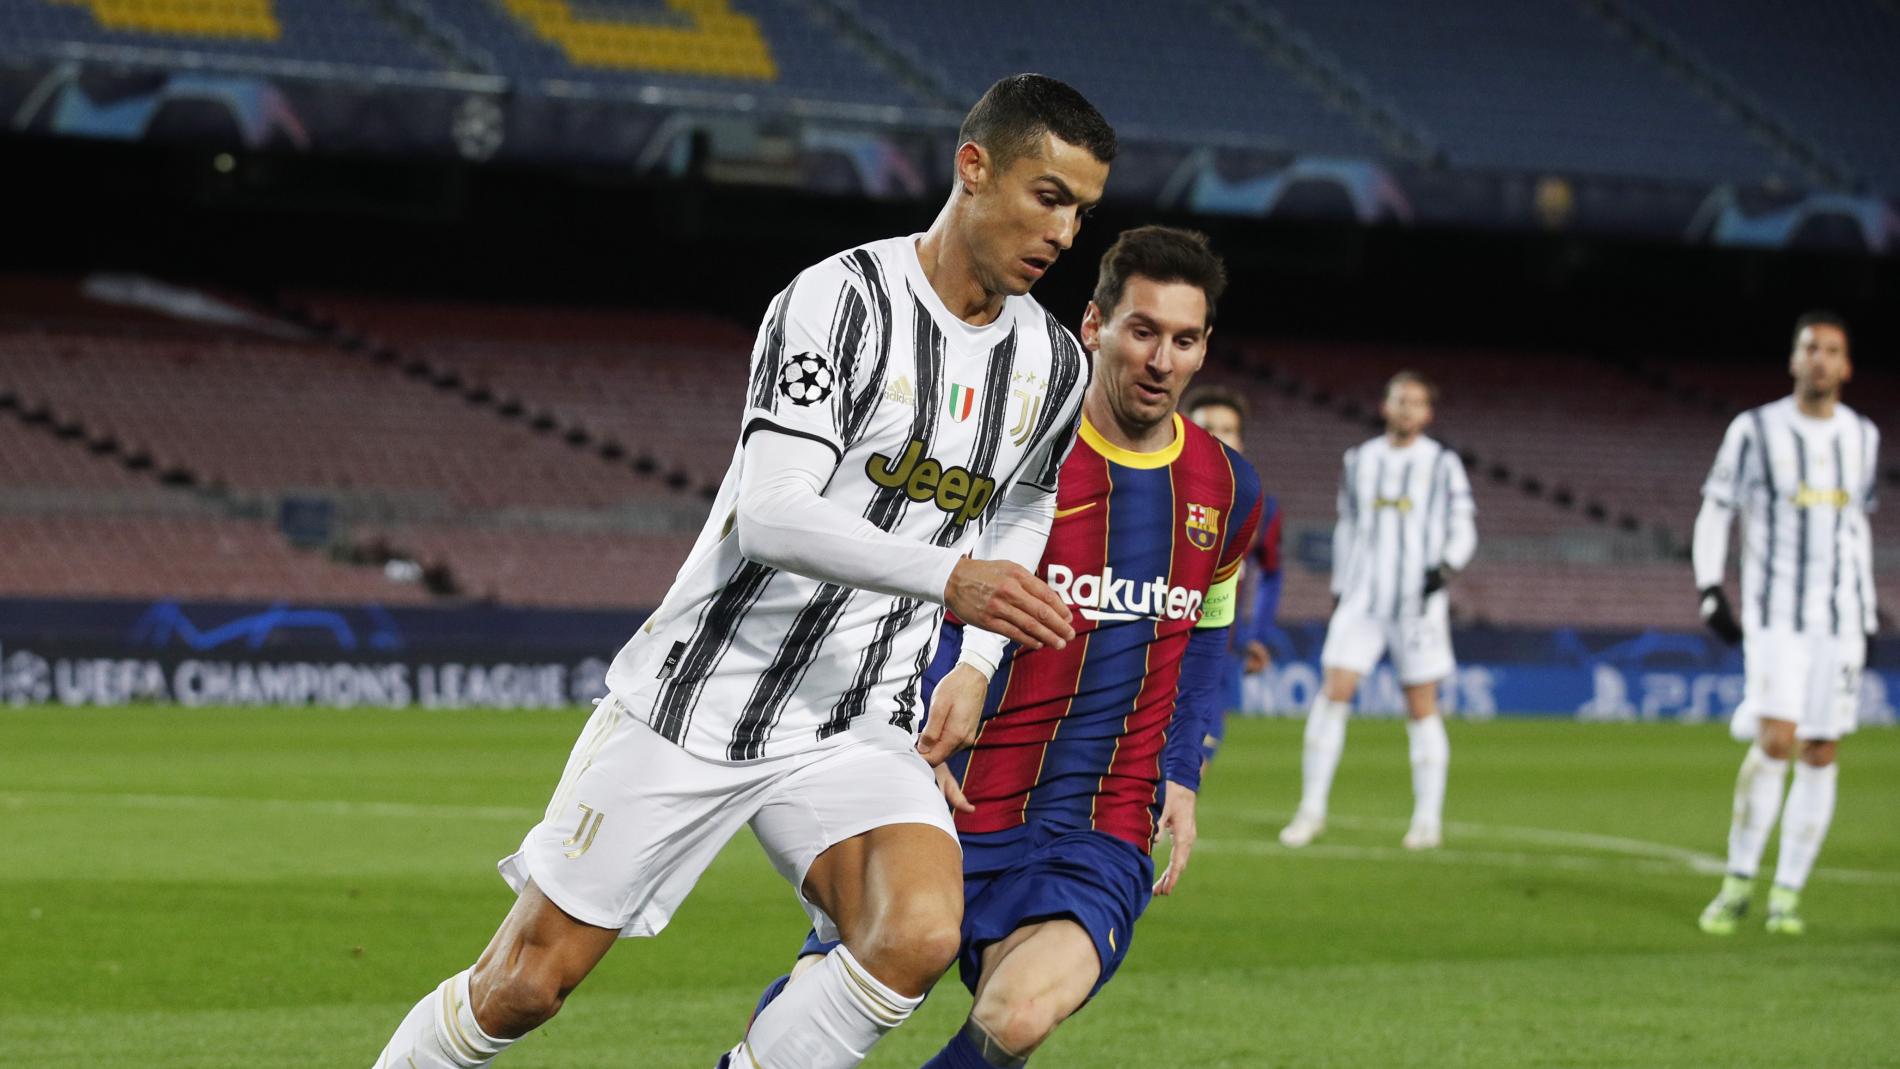 Louis Vuitton réunit Lionel Messi et Cristiano Ronaldo dans une campagne  publicitaire à l'occasion de la Coupe du Monde de football Qatar 2022 